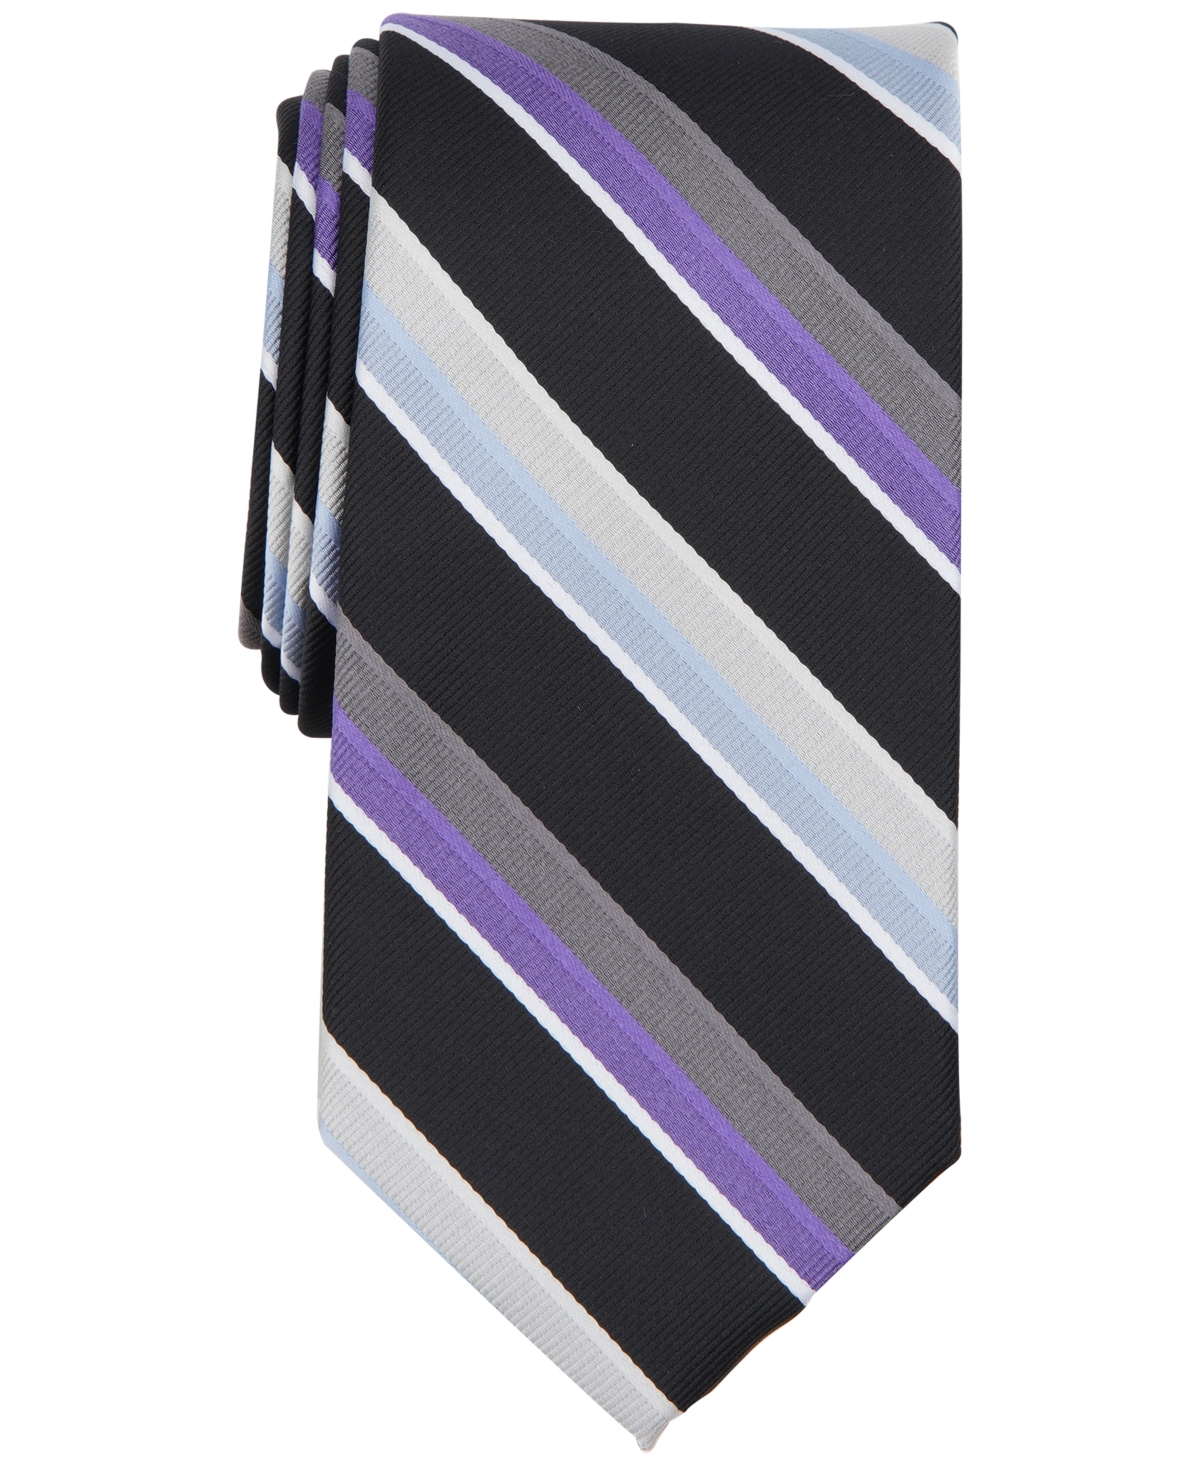 Michael Kors Men's Quincy Stripe Tie In Black